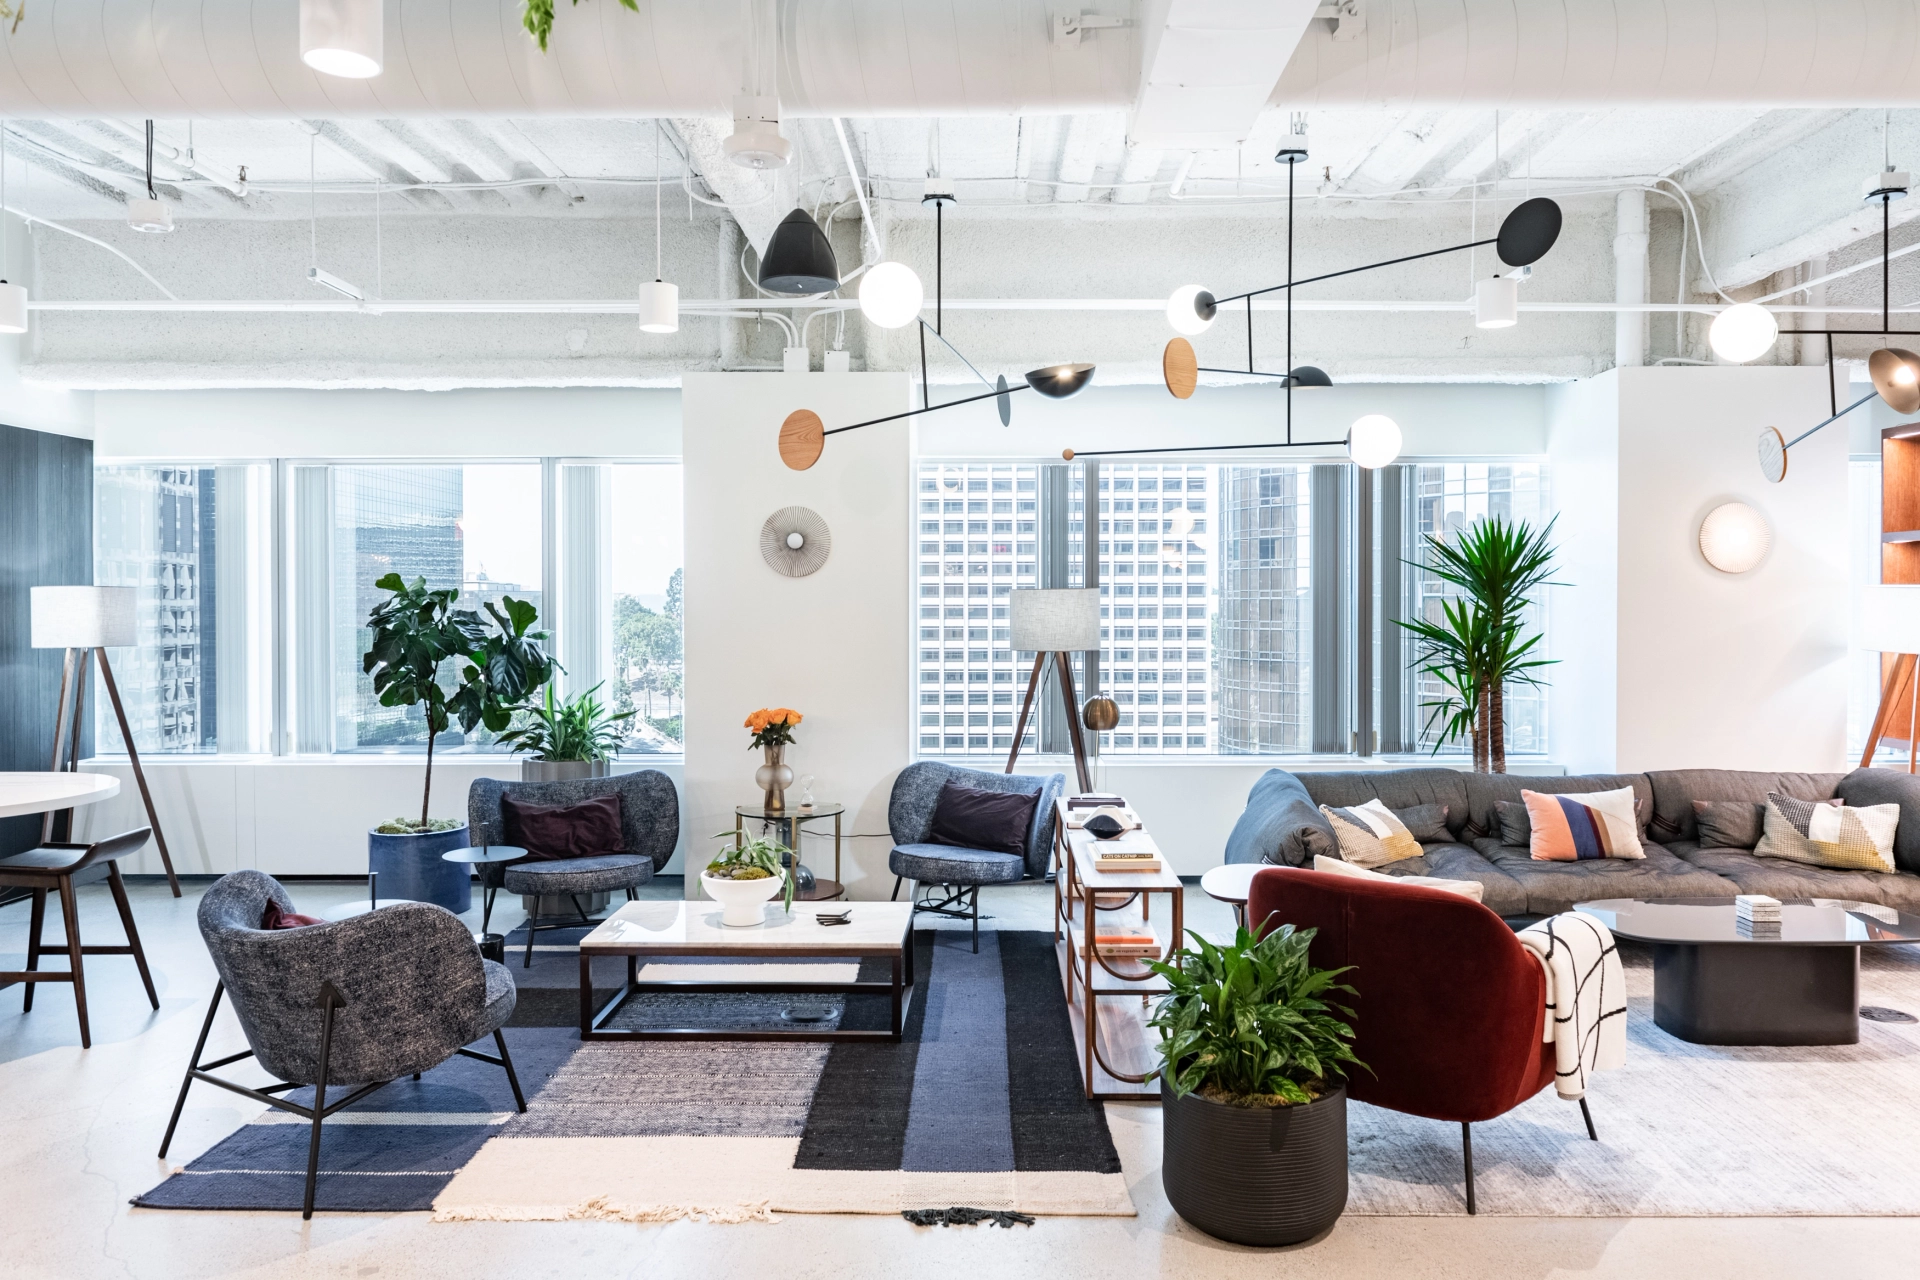 Een moderne kantoorwerkruimte met veel meubels en planten.